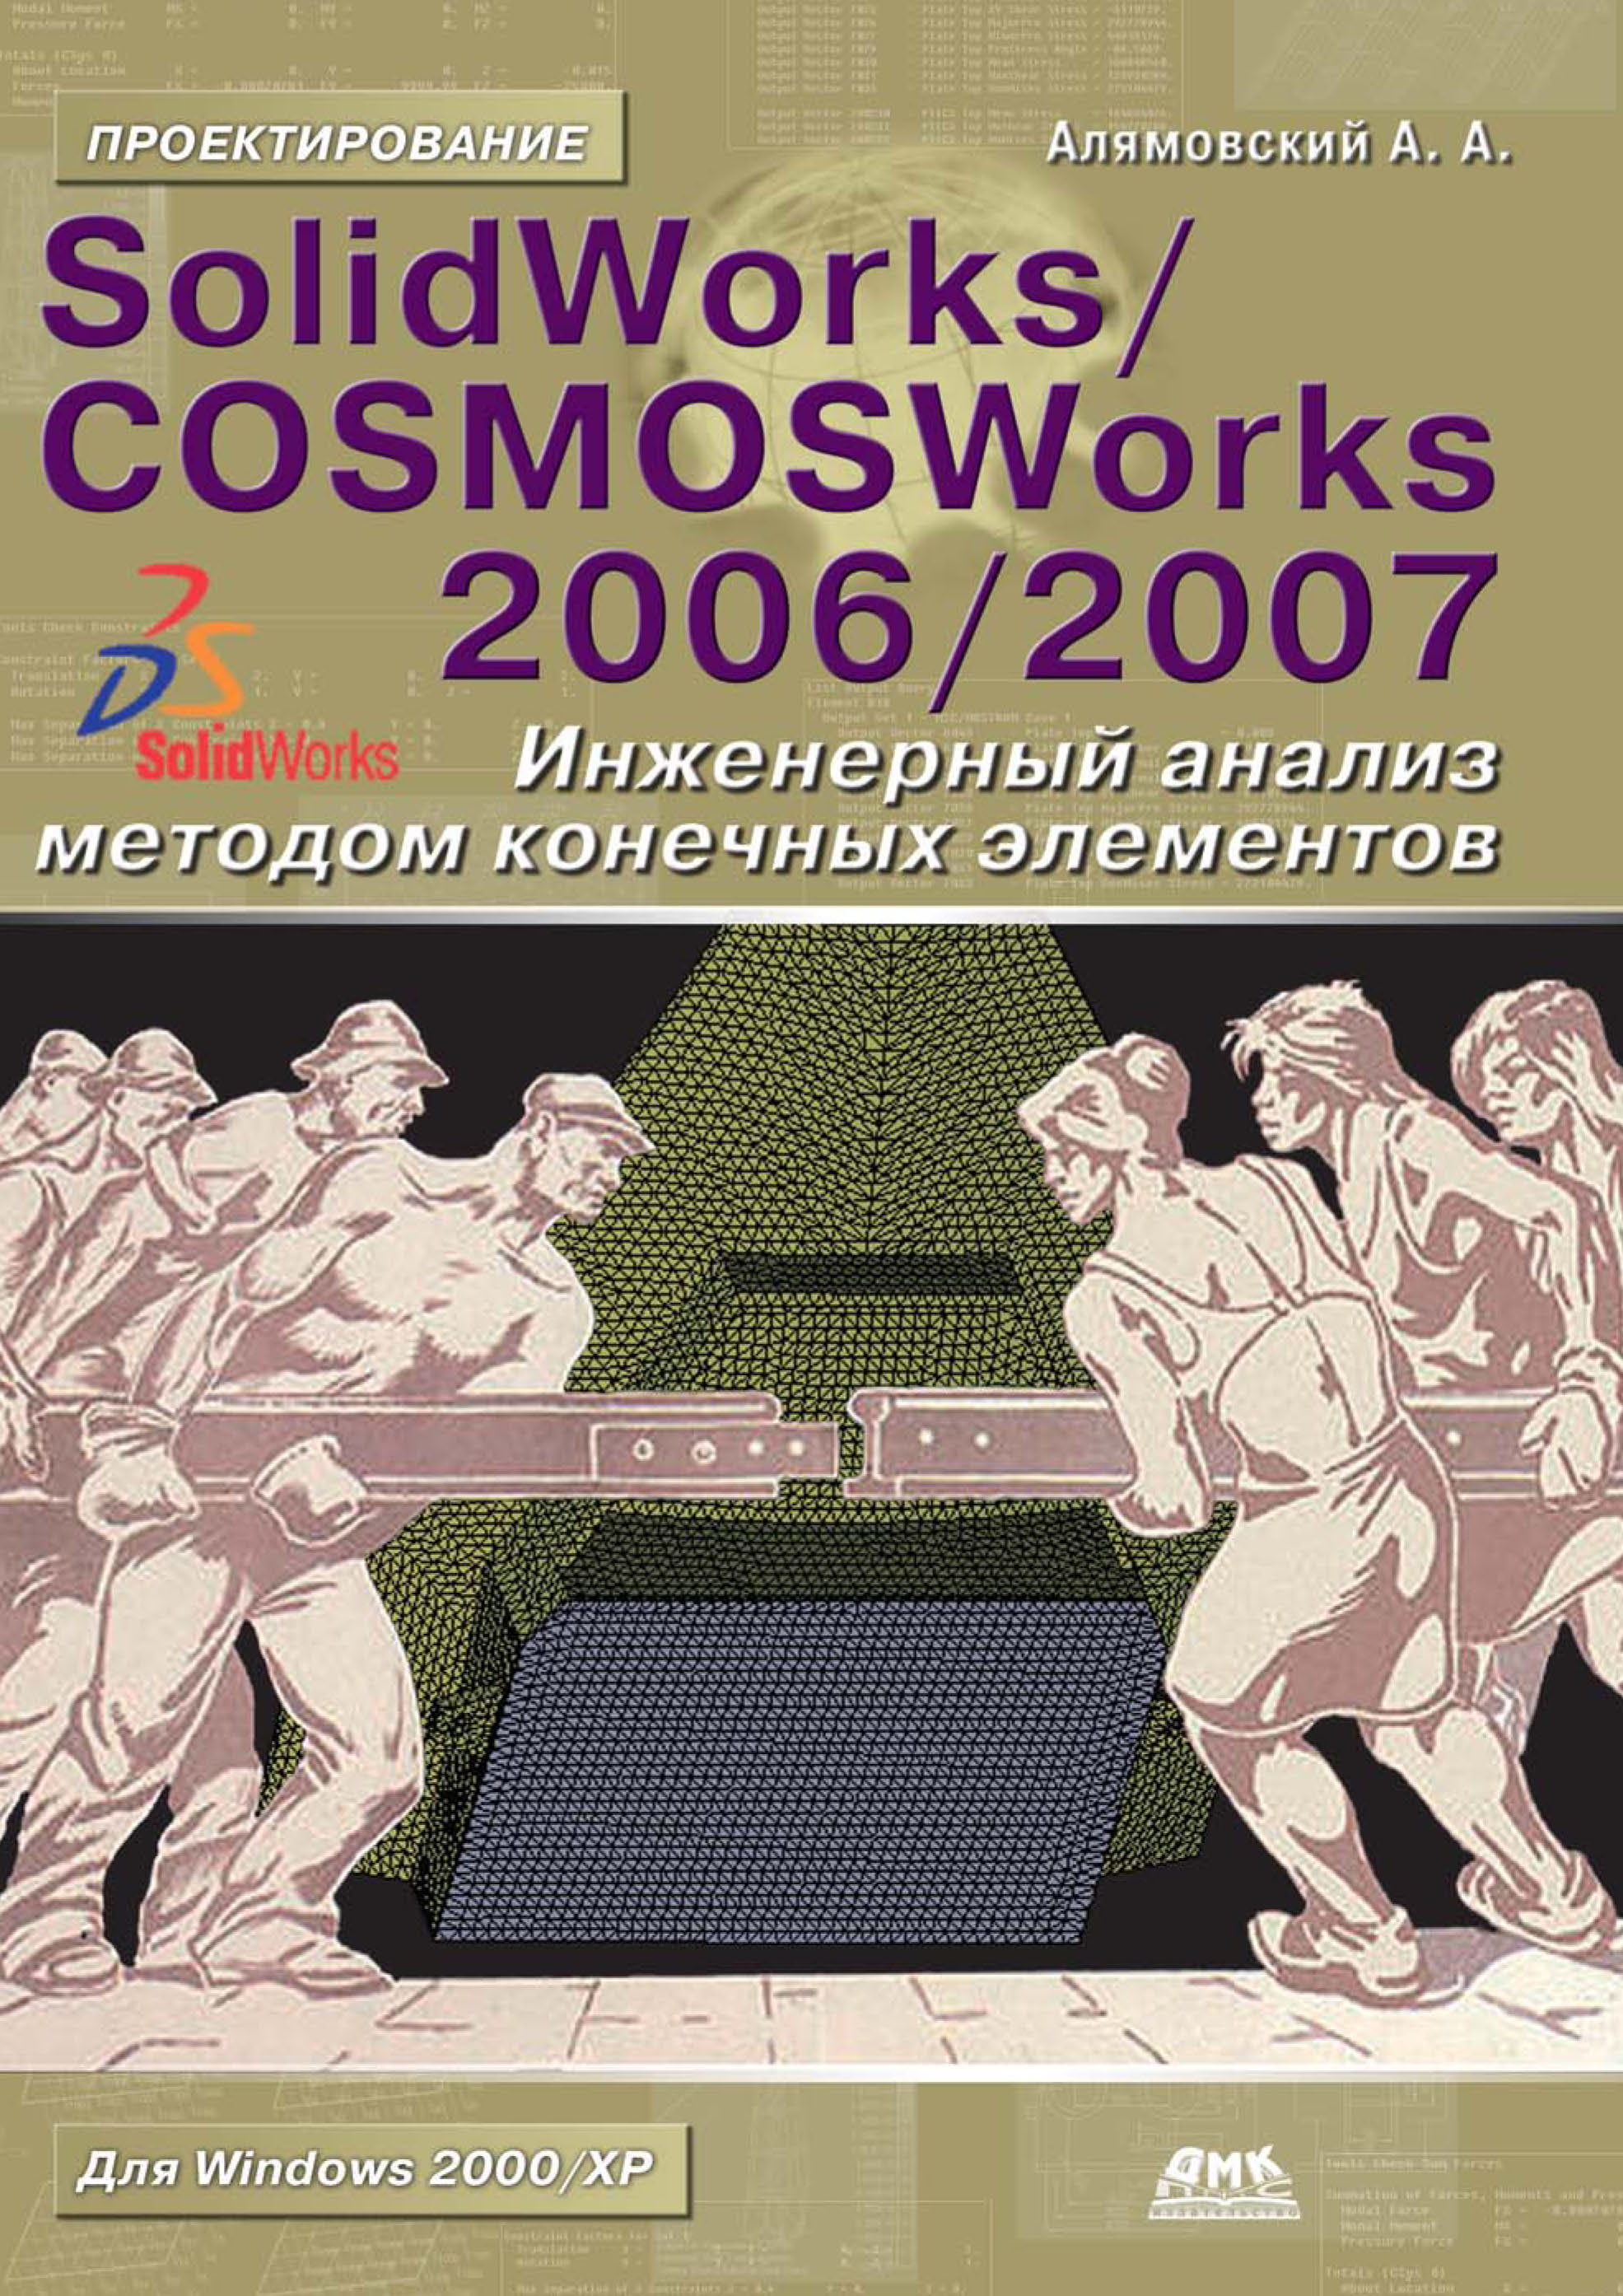 SolidWorks/COSMOSWorks 2006-2007. Инженерный анализ методом конечных элементов